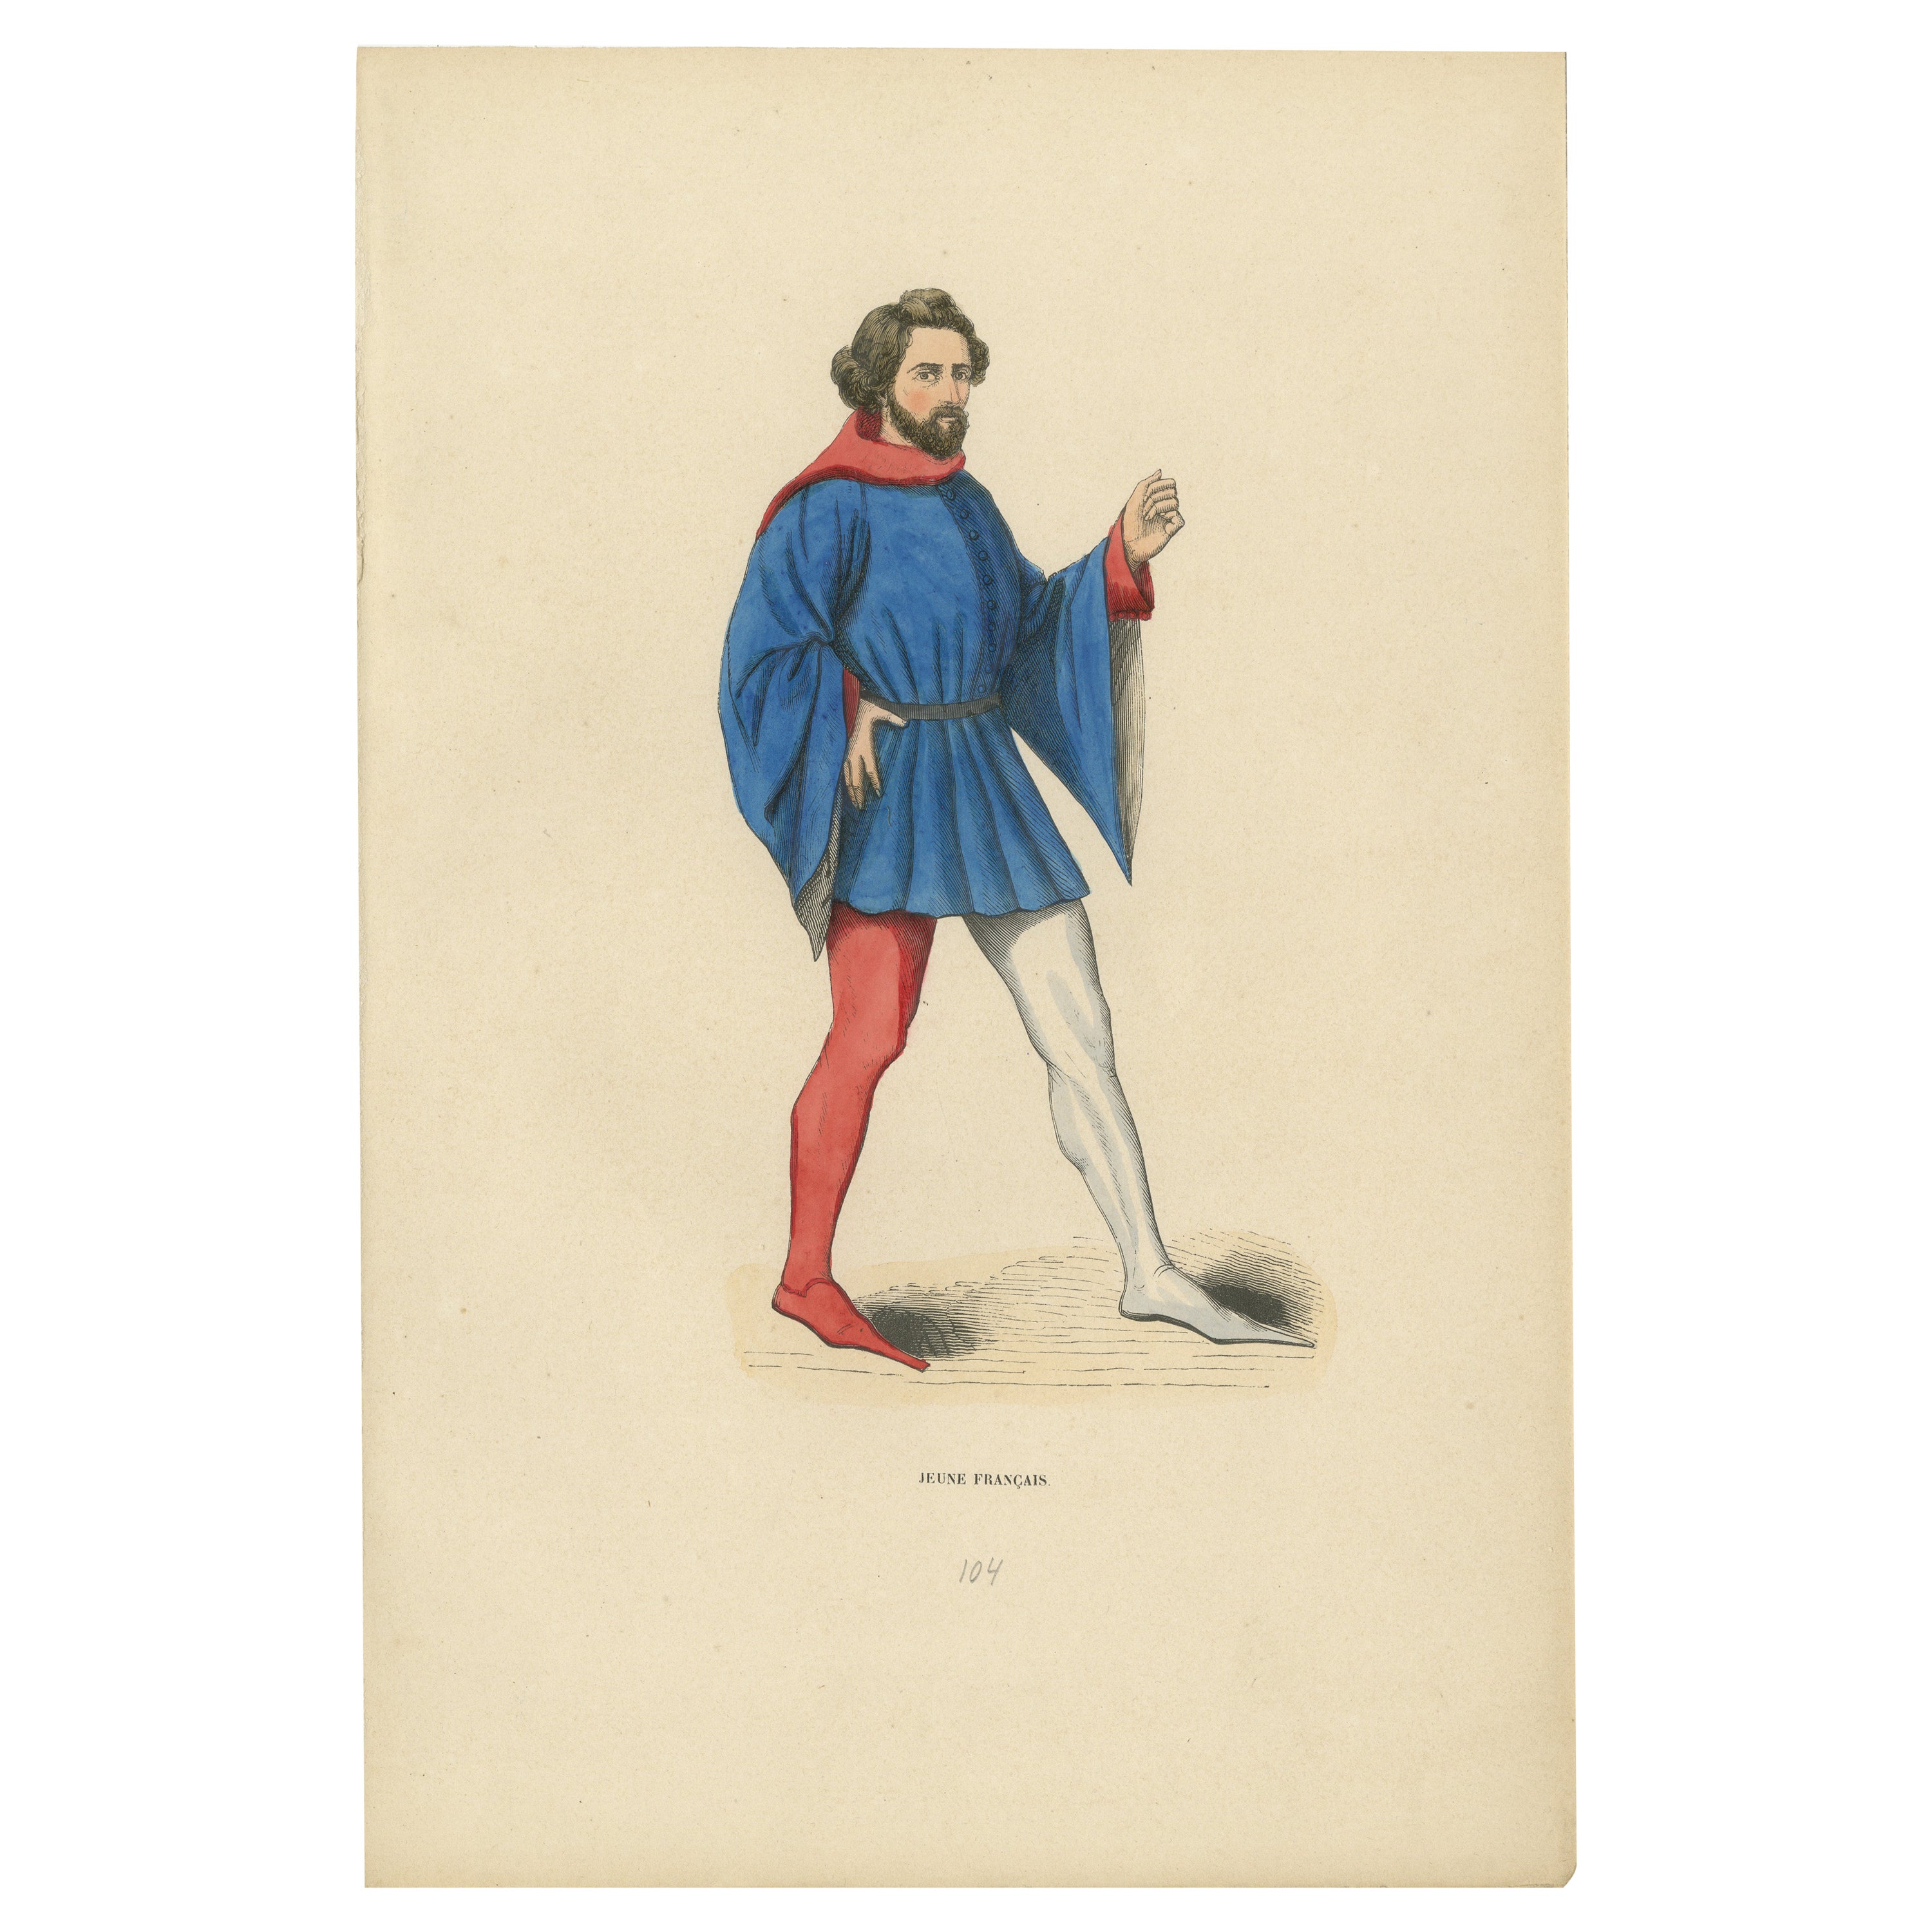 Französische Jugend im traditionellen mittelalterlichen Anzug, 1847